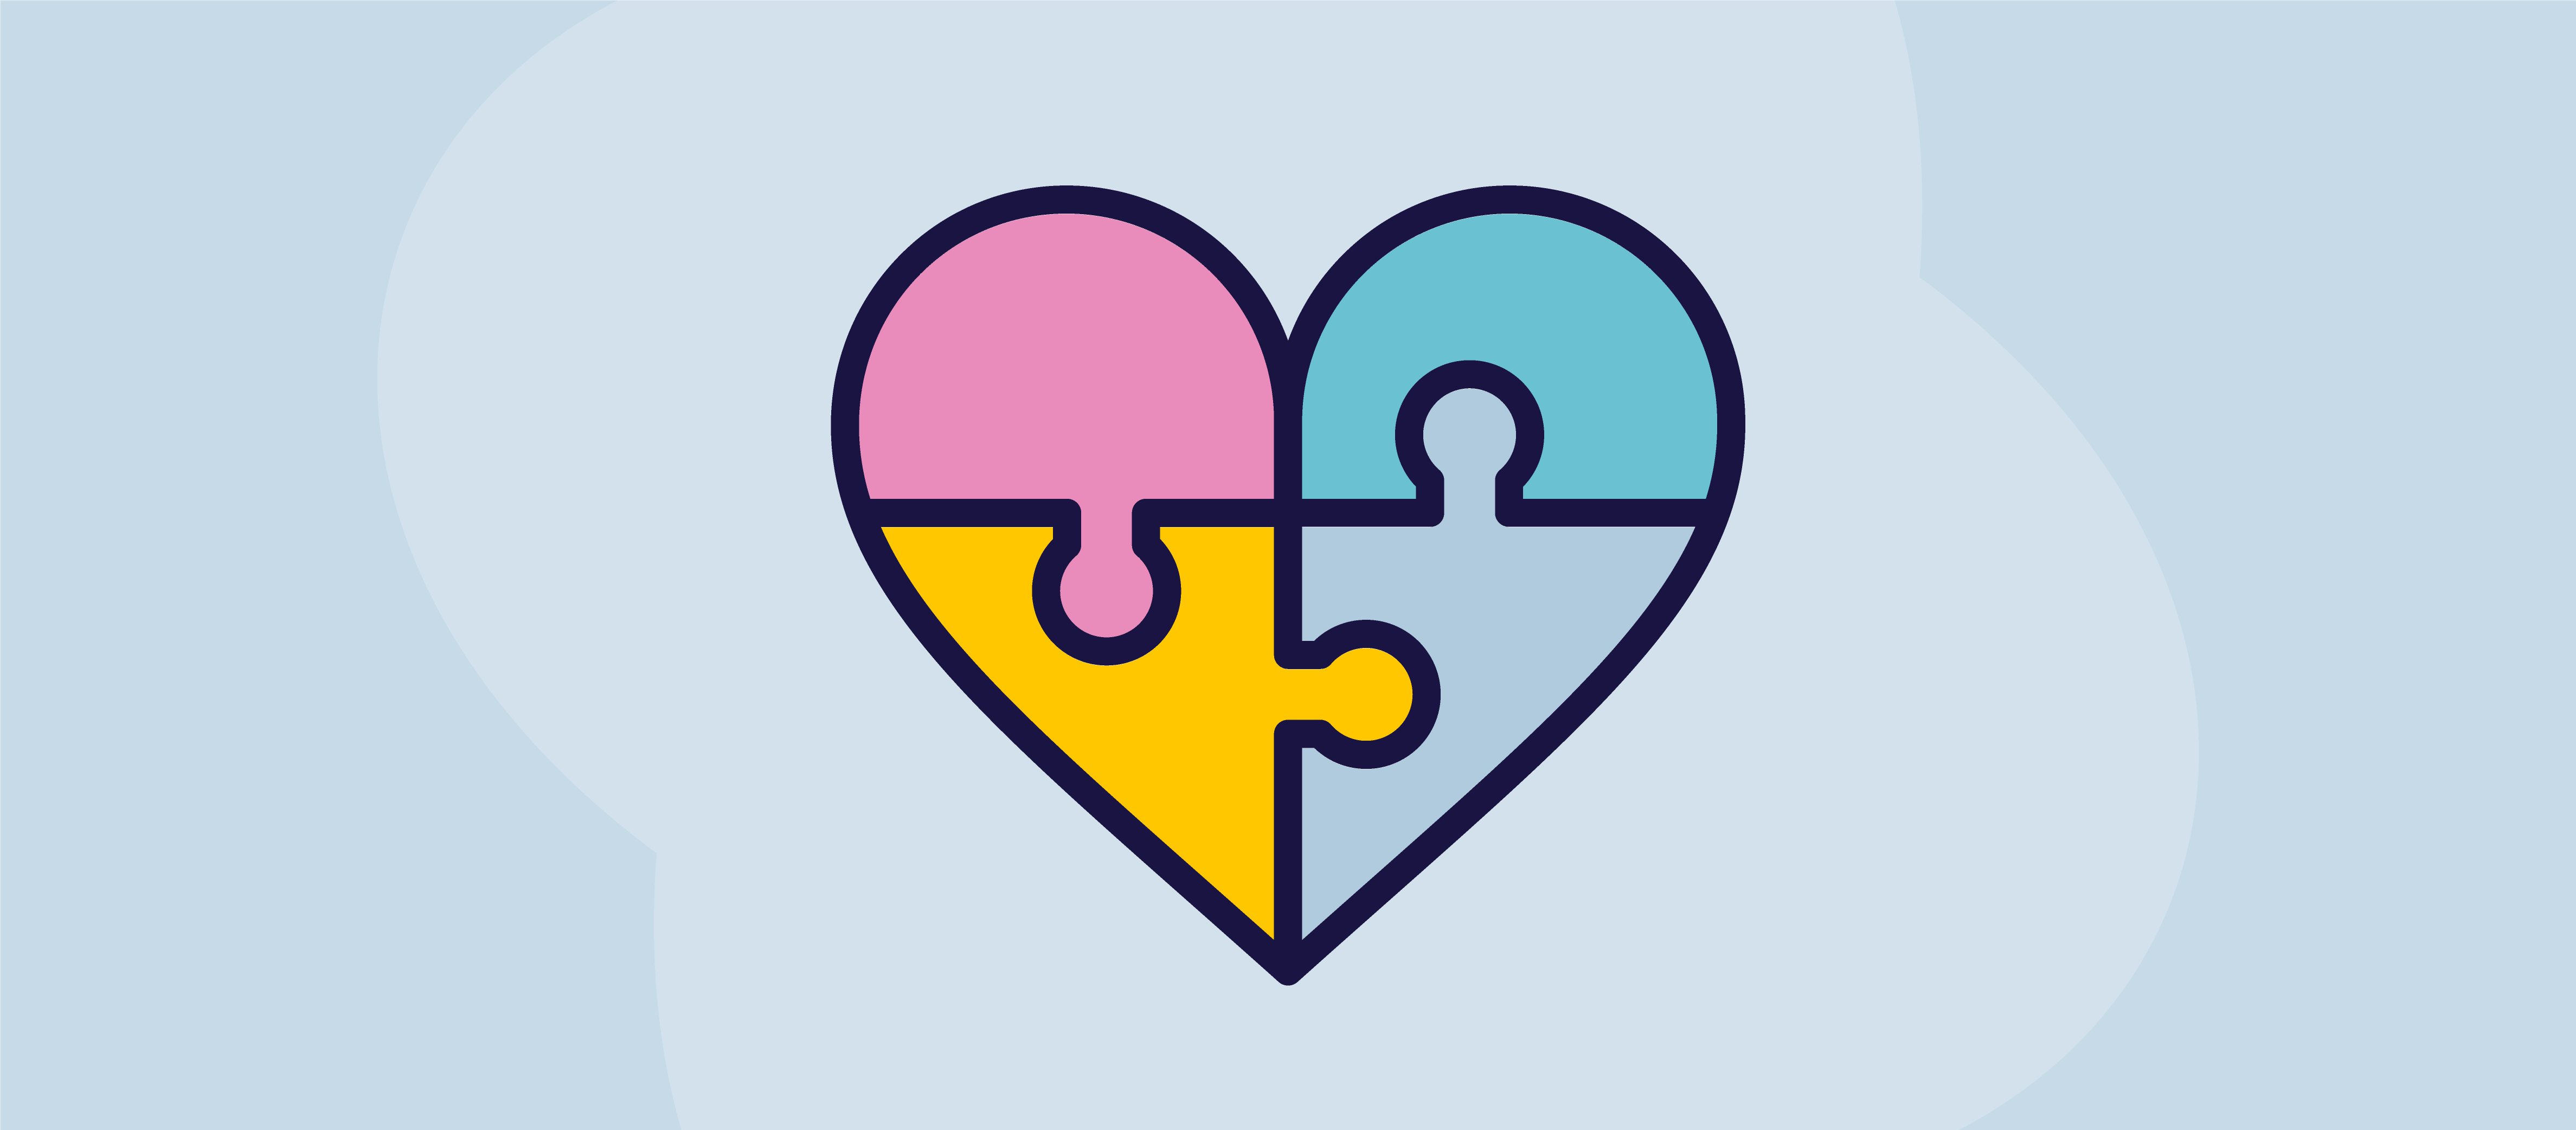 Illustration d'un cœur sous la forme d'un puzzle dont les quatre pièces de couleurs différentes s'assemblent pour le compléter.